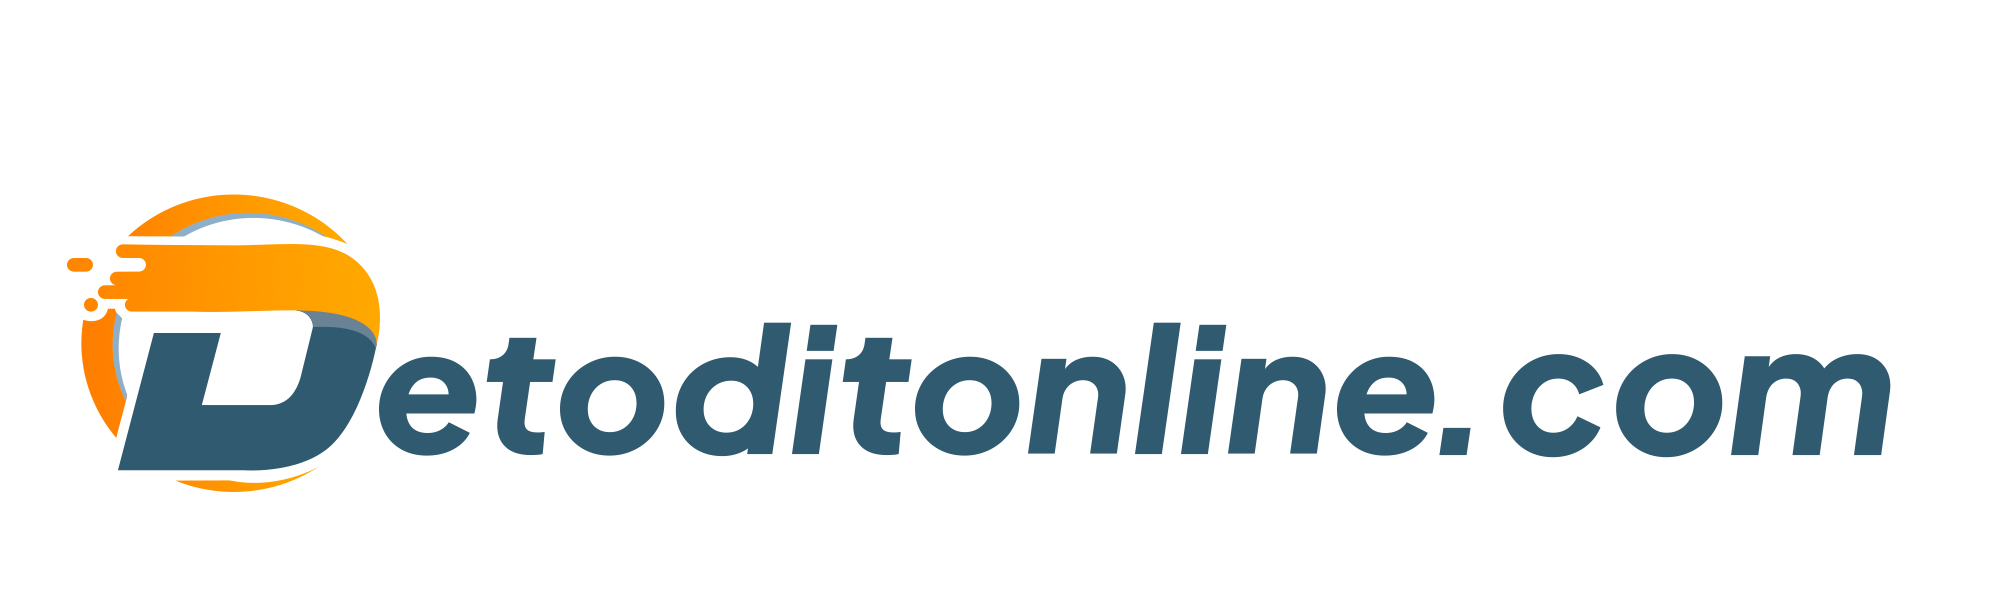 detoditonline.com